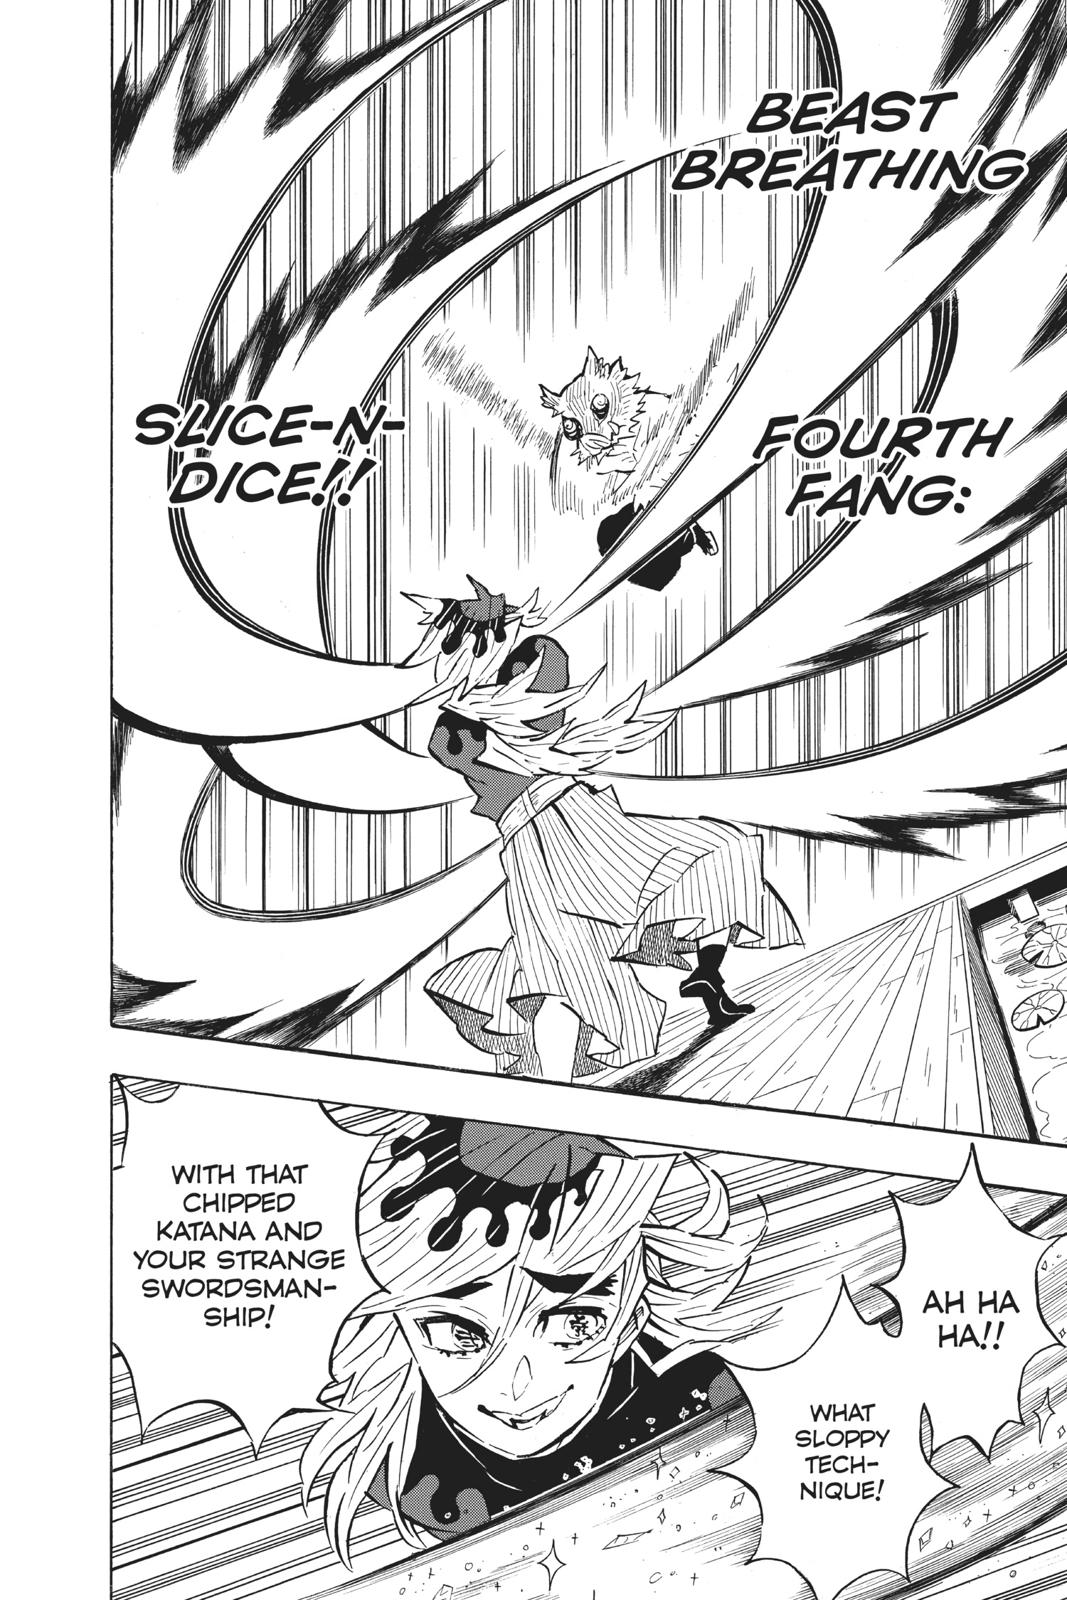 Demon Slayer Manga Manga Chapter - 159 - image 8